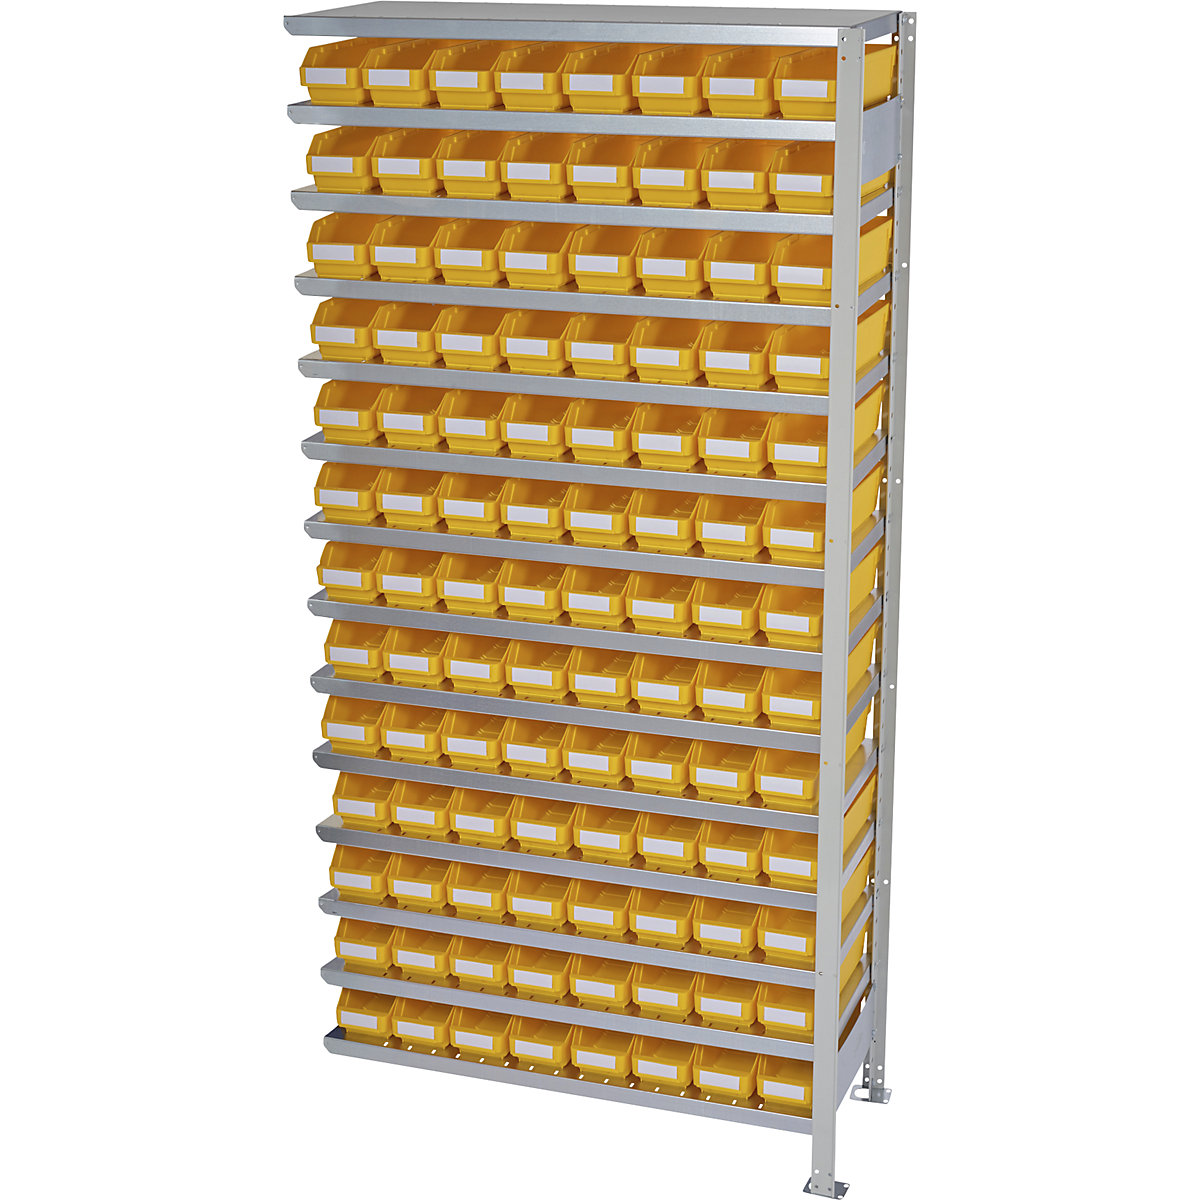 Estante de encaixar com caixas para estante – STEMO, altura da estante 2100 mm, estante adicional, profundidade 300 mm, 104 caixas amarelas-22